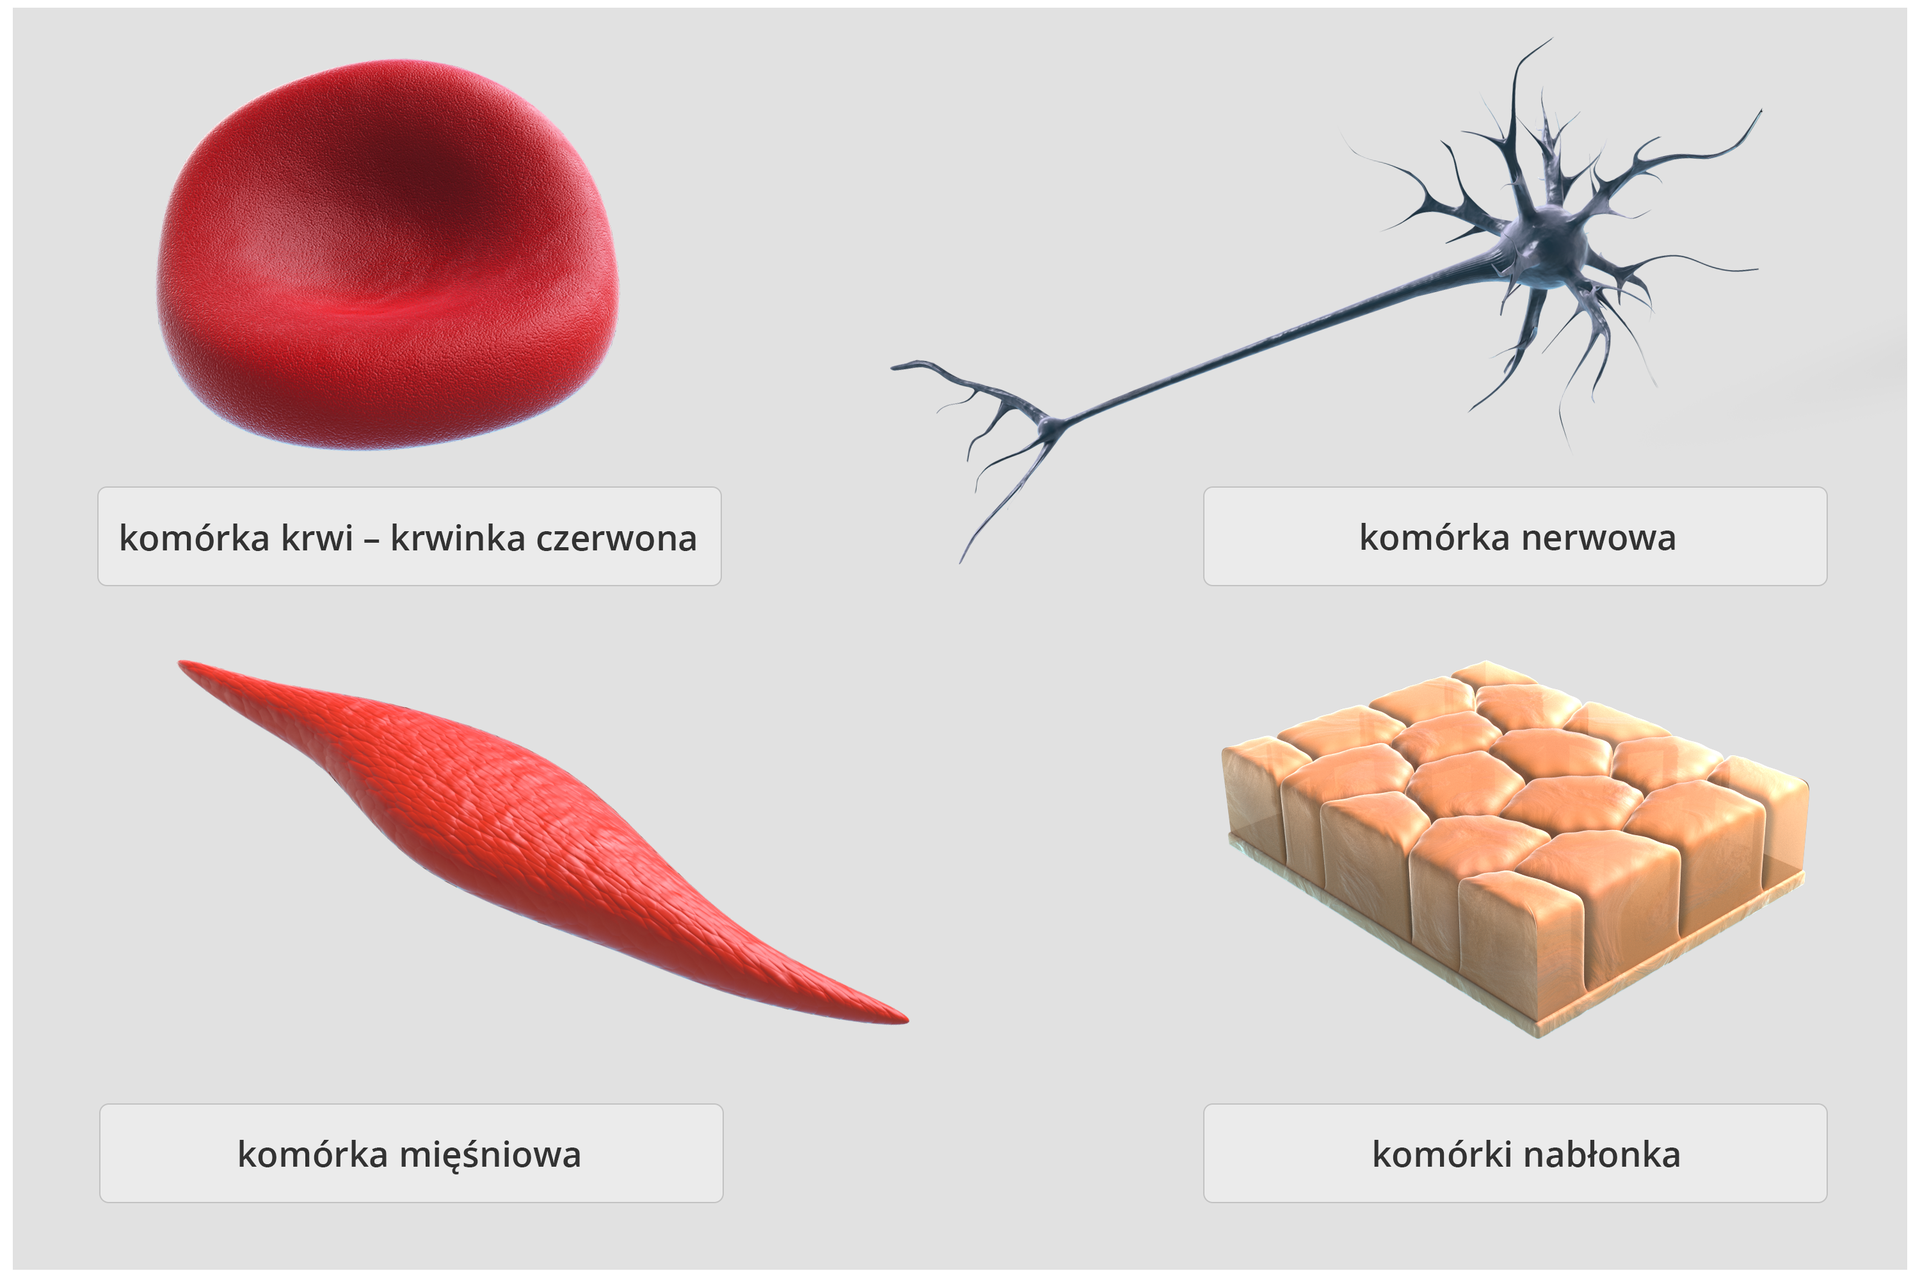 Różnorodność komórek – schemat przedstawia cztery przykładowe rodzaje komórek budujących organizmy zwierzęce. W lewym, górnym rogu, komórka w kształcie wklęsłego dysku – krwinka czerwona, obok wydłużona komórka z wypustkami , to komórka nerwowa. W lewym dolnym rogu, wydłużona komórka z zaostrzonymi końcami – komórka mięśniowa. Obok, kilka przylegających do siebie komórek w kształcie niskich sześcianów, to komórki nabłonka.